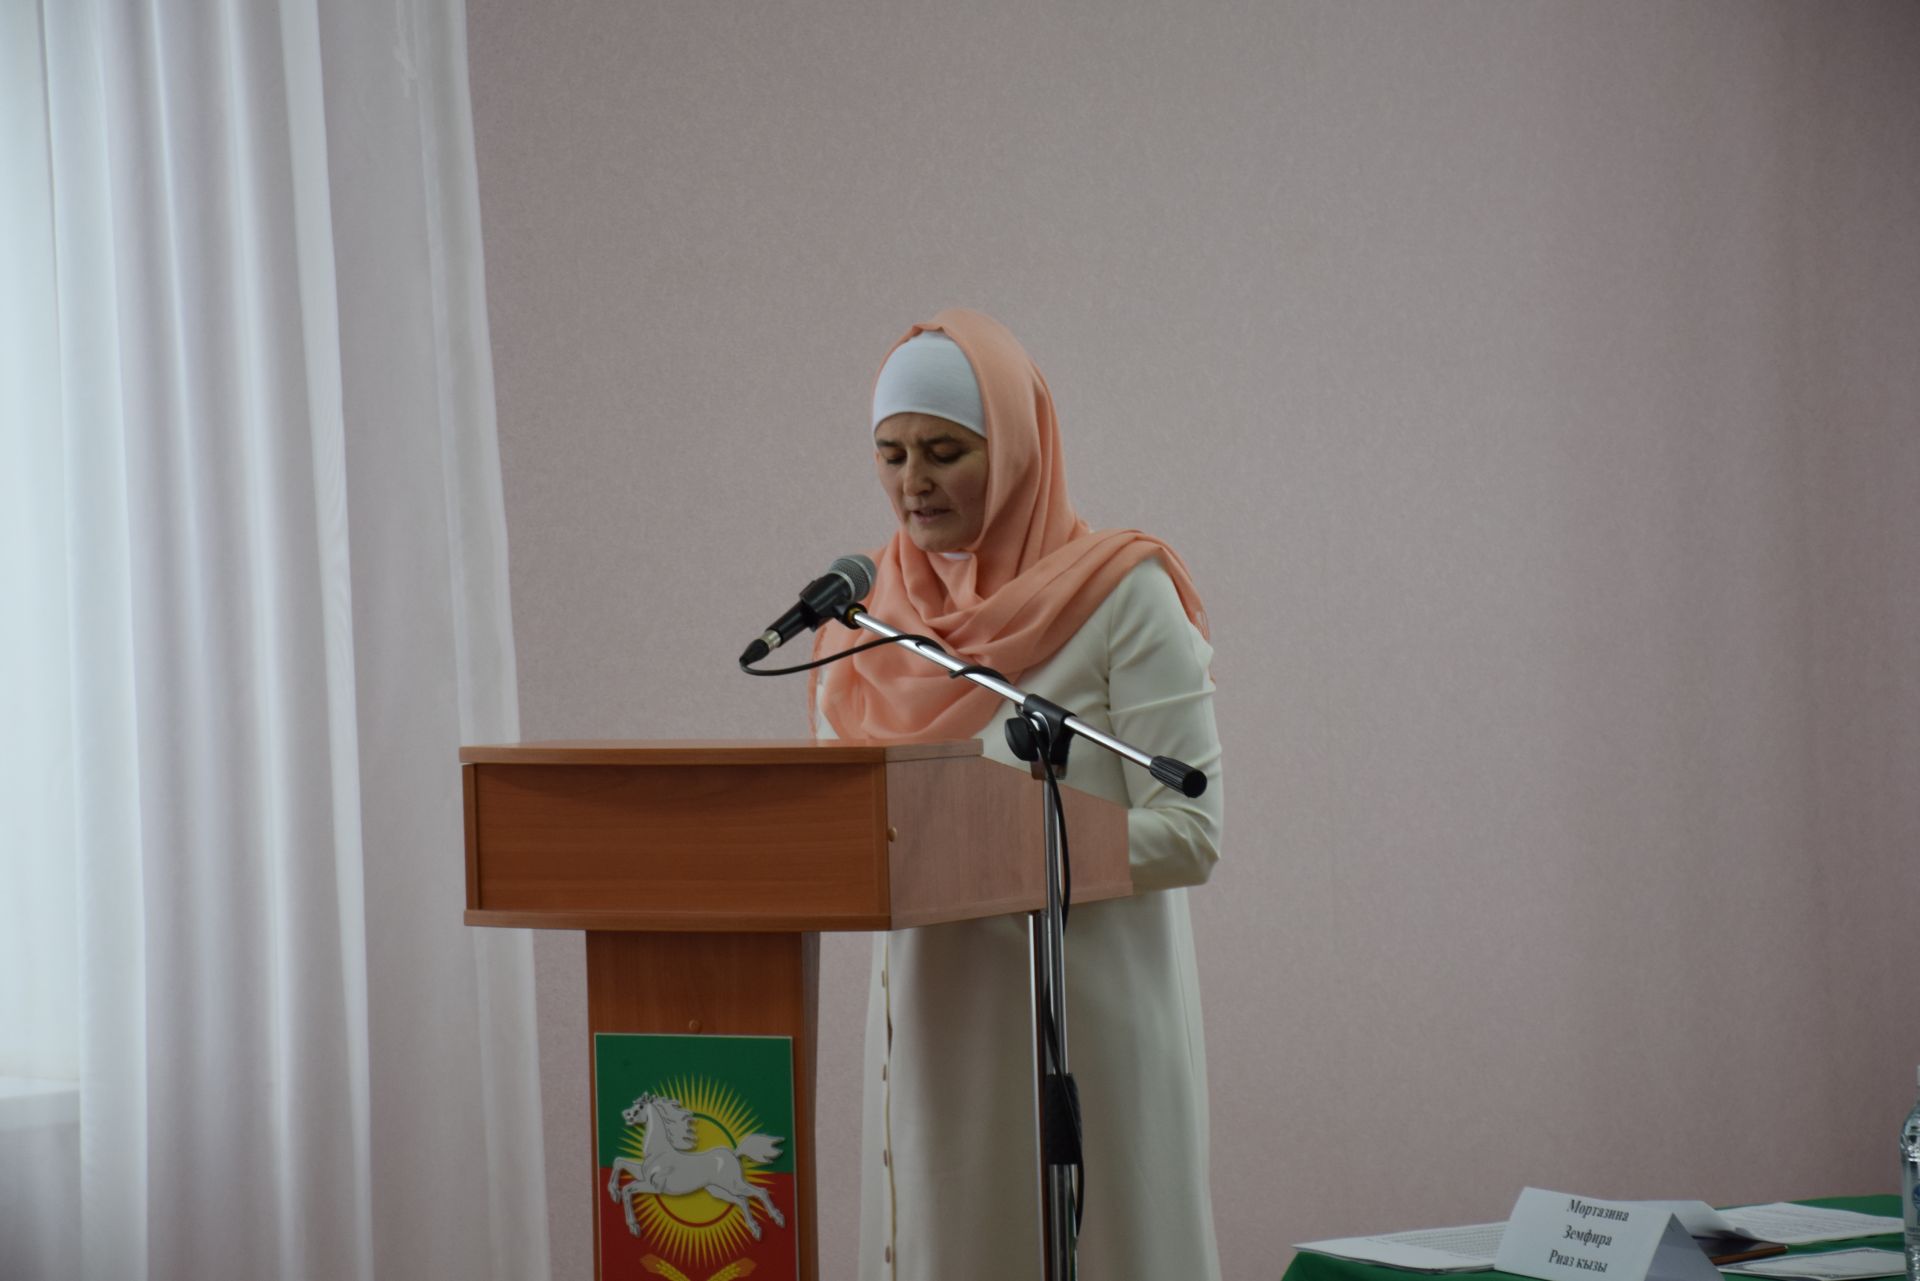 Нурлатские мусульмане на практической конференции основное внимание уделили вопросам семейного воспитания